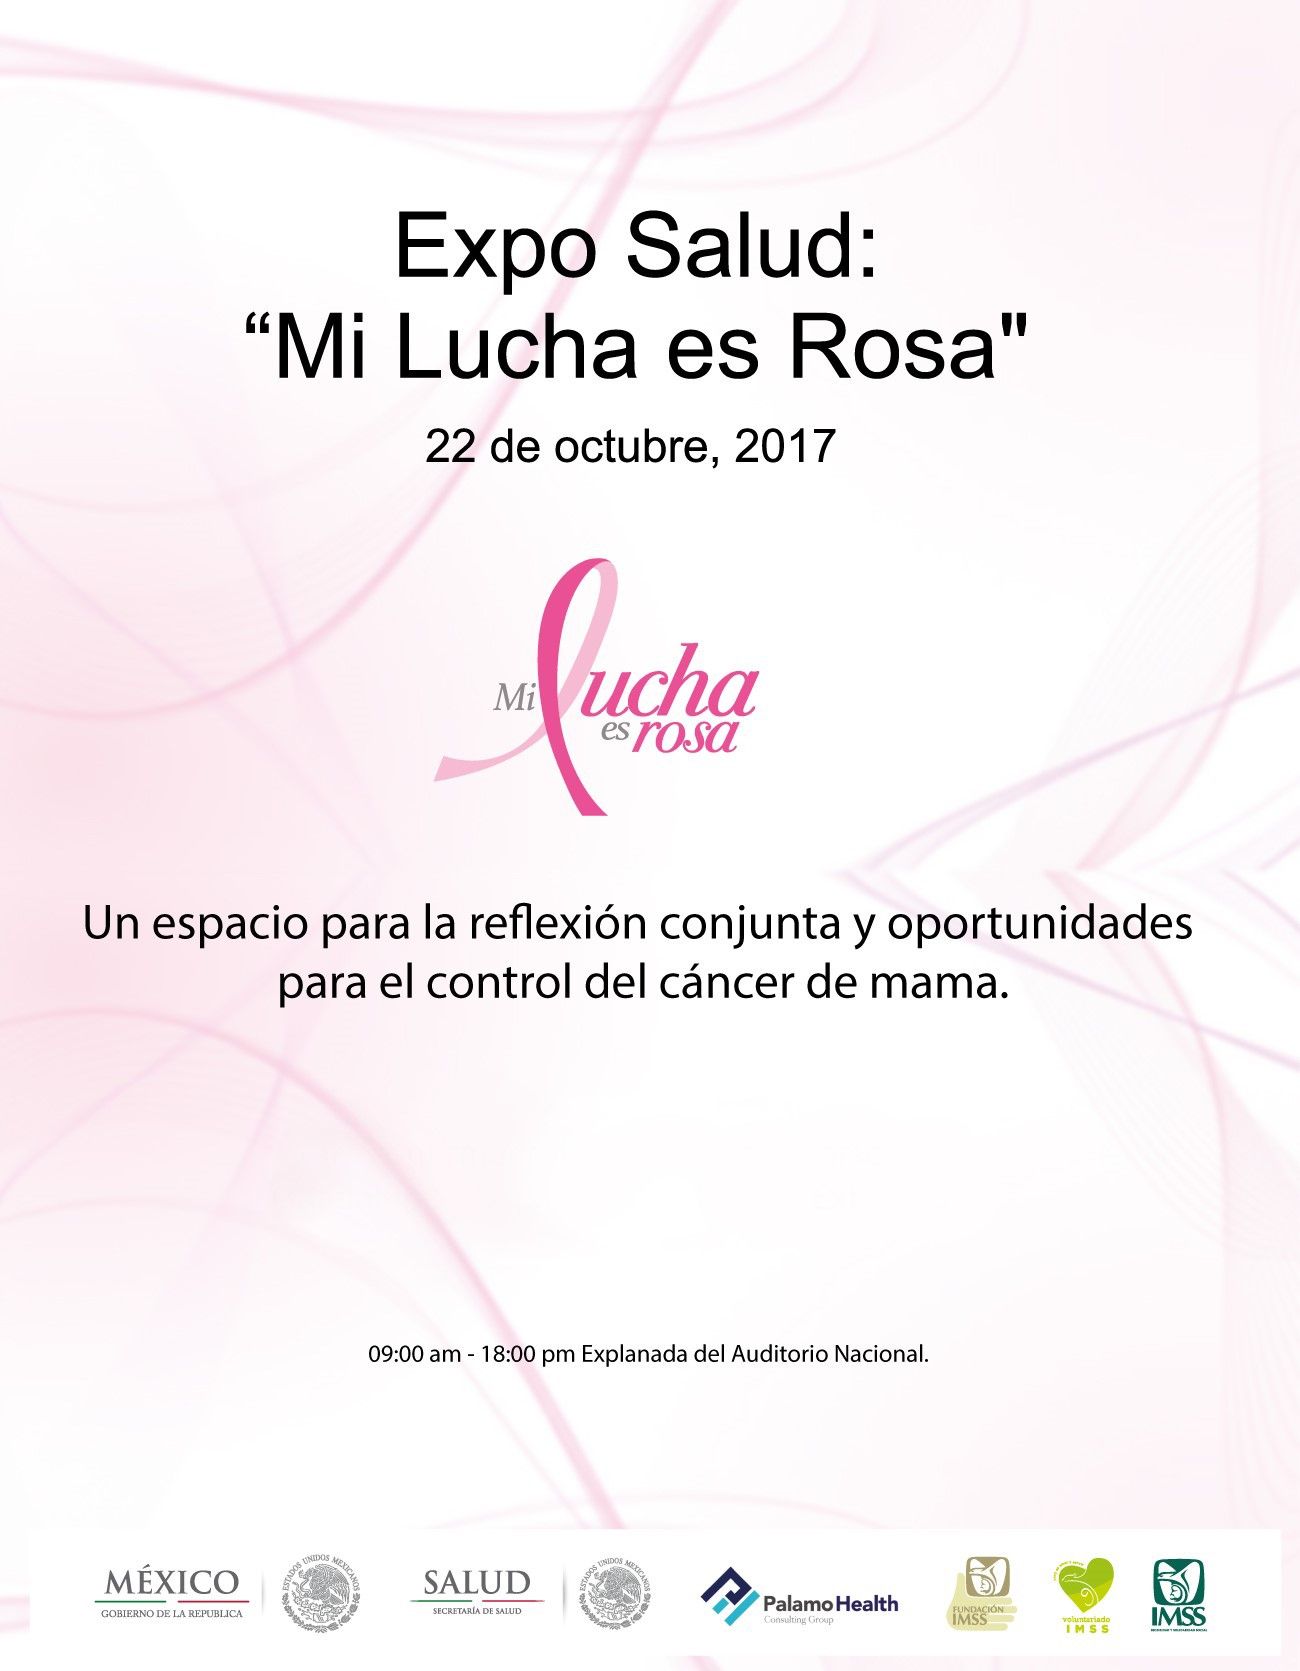 Expo Salud: todo el Sistema Nacional de Salud reunido contra el cáncer de mama